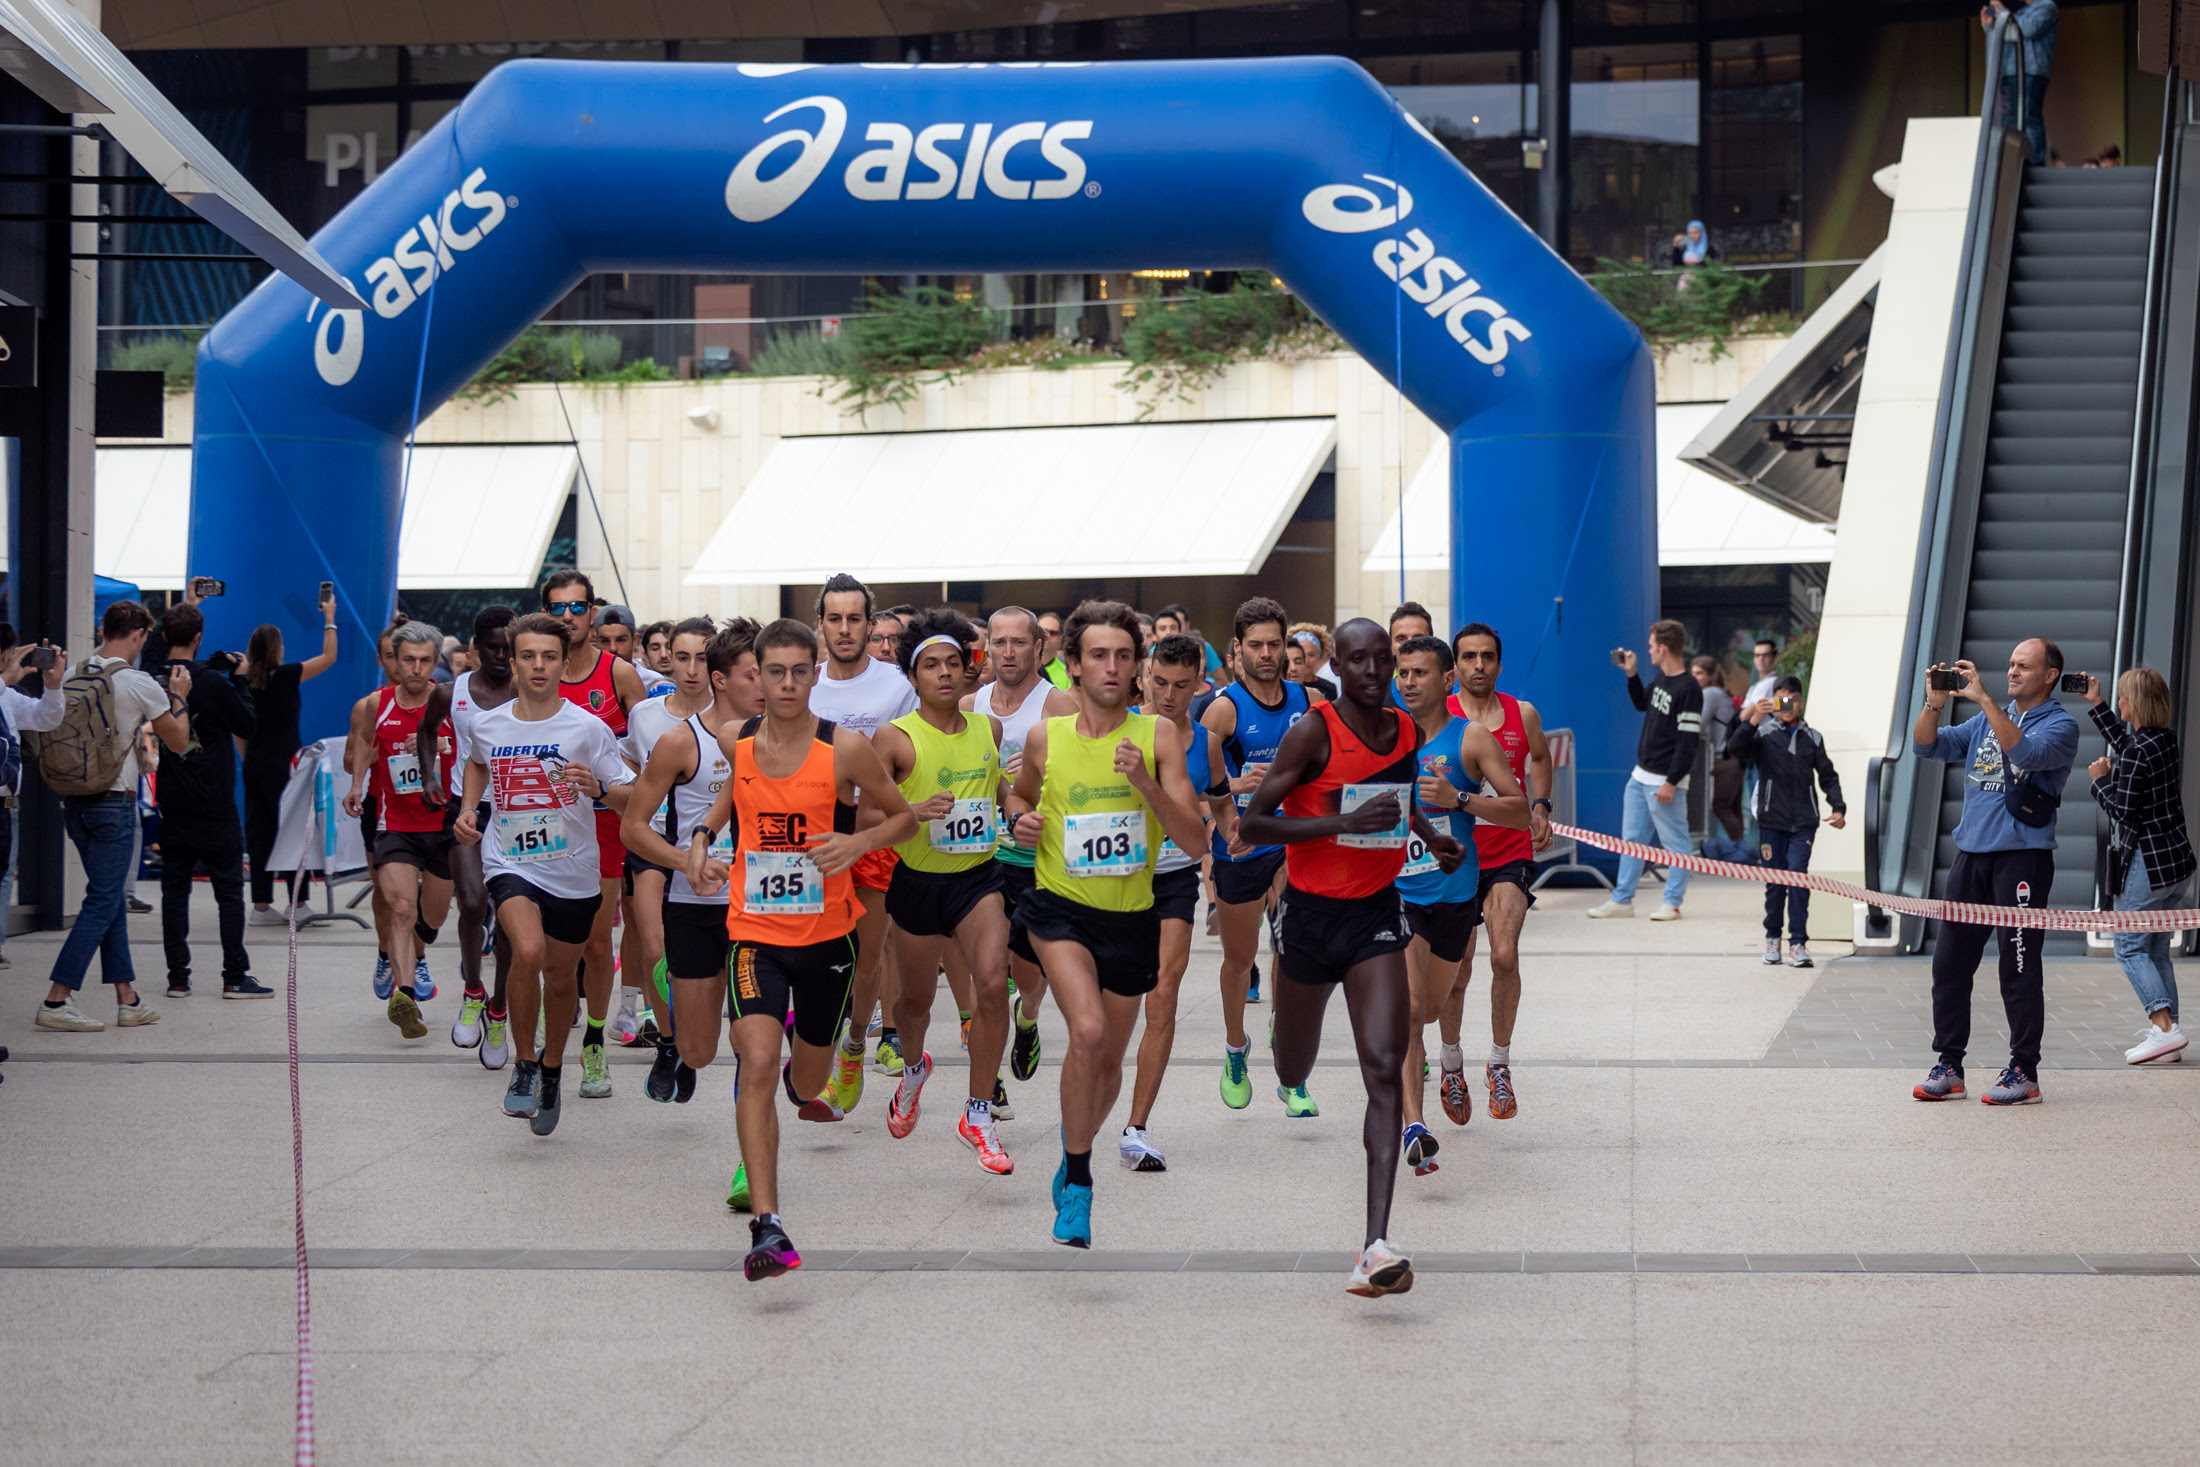 “Smoe Run 5K”: Mayio e Baldassarri vincono a San Marino